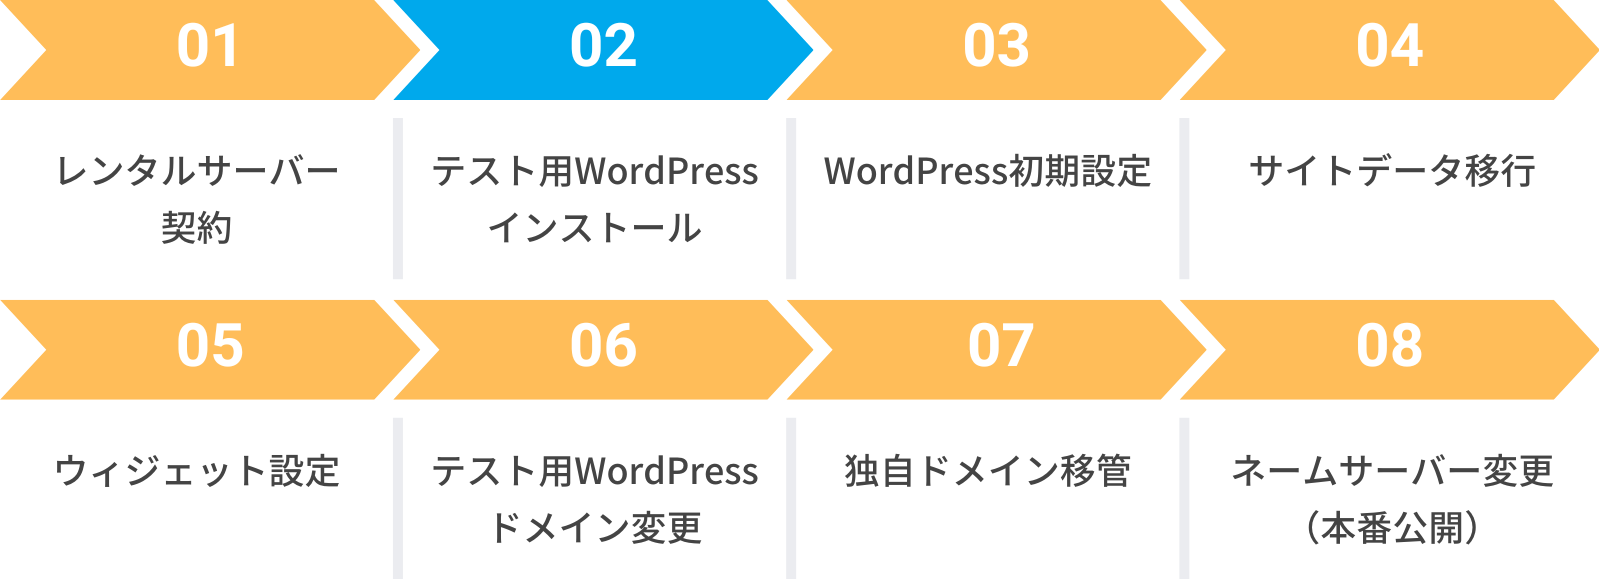 テスト用WordPressのインストール